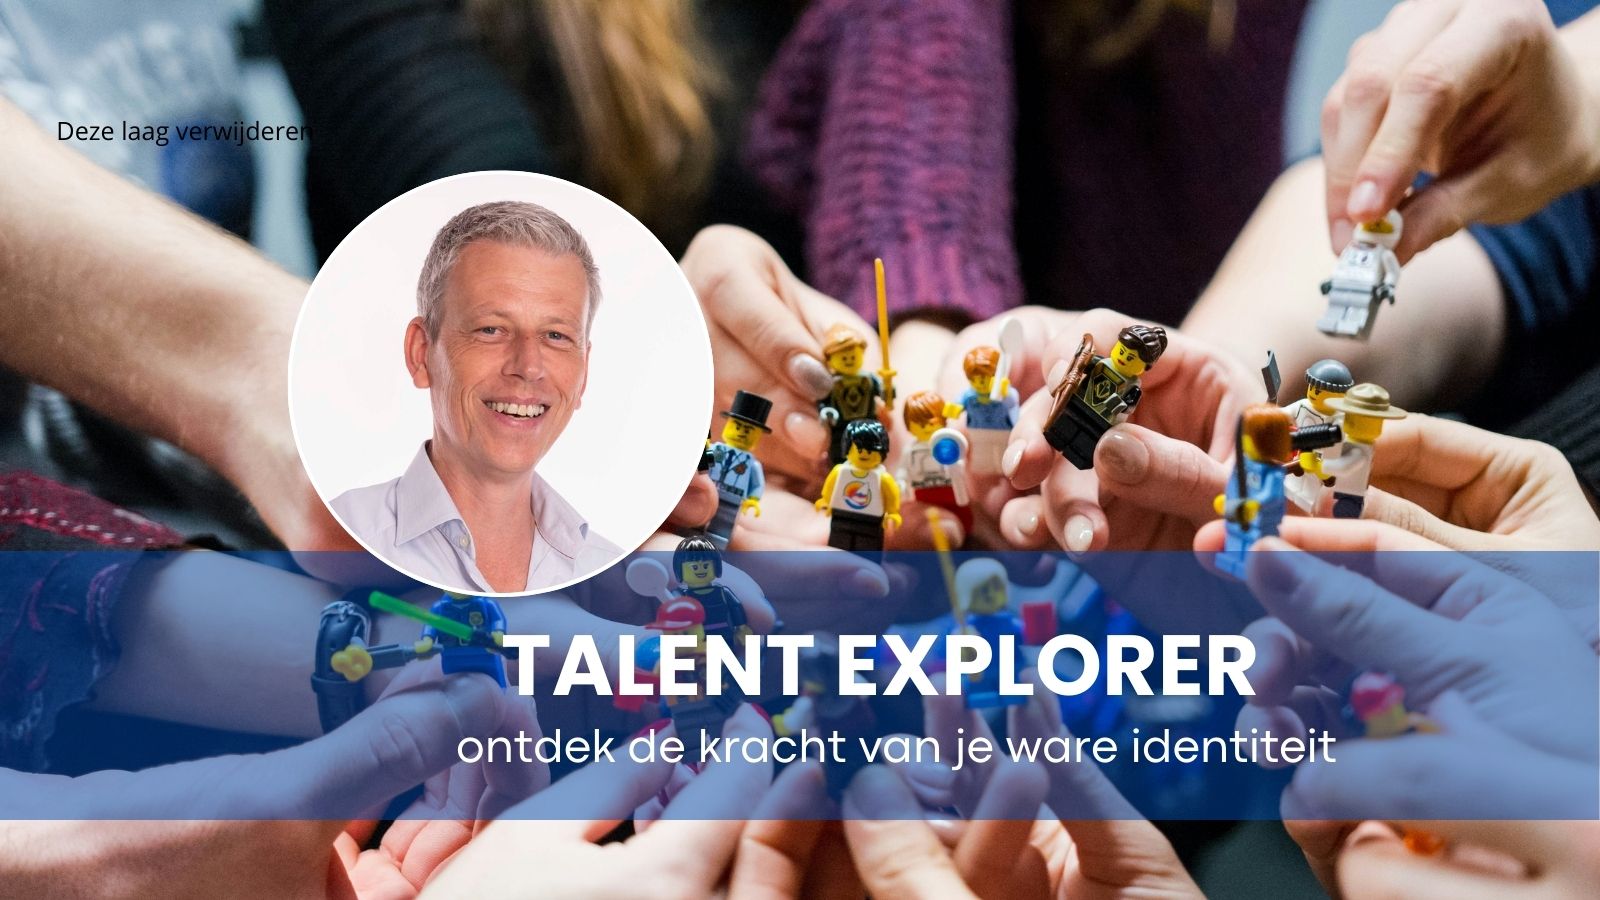 Personeelsuitje Almere: Talent explorer